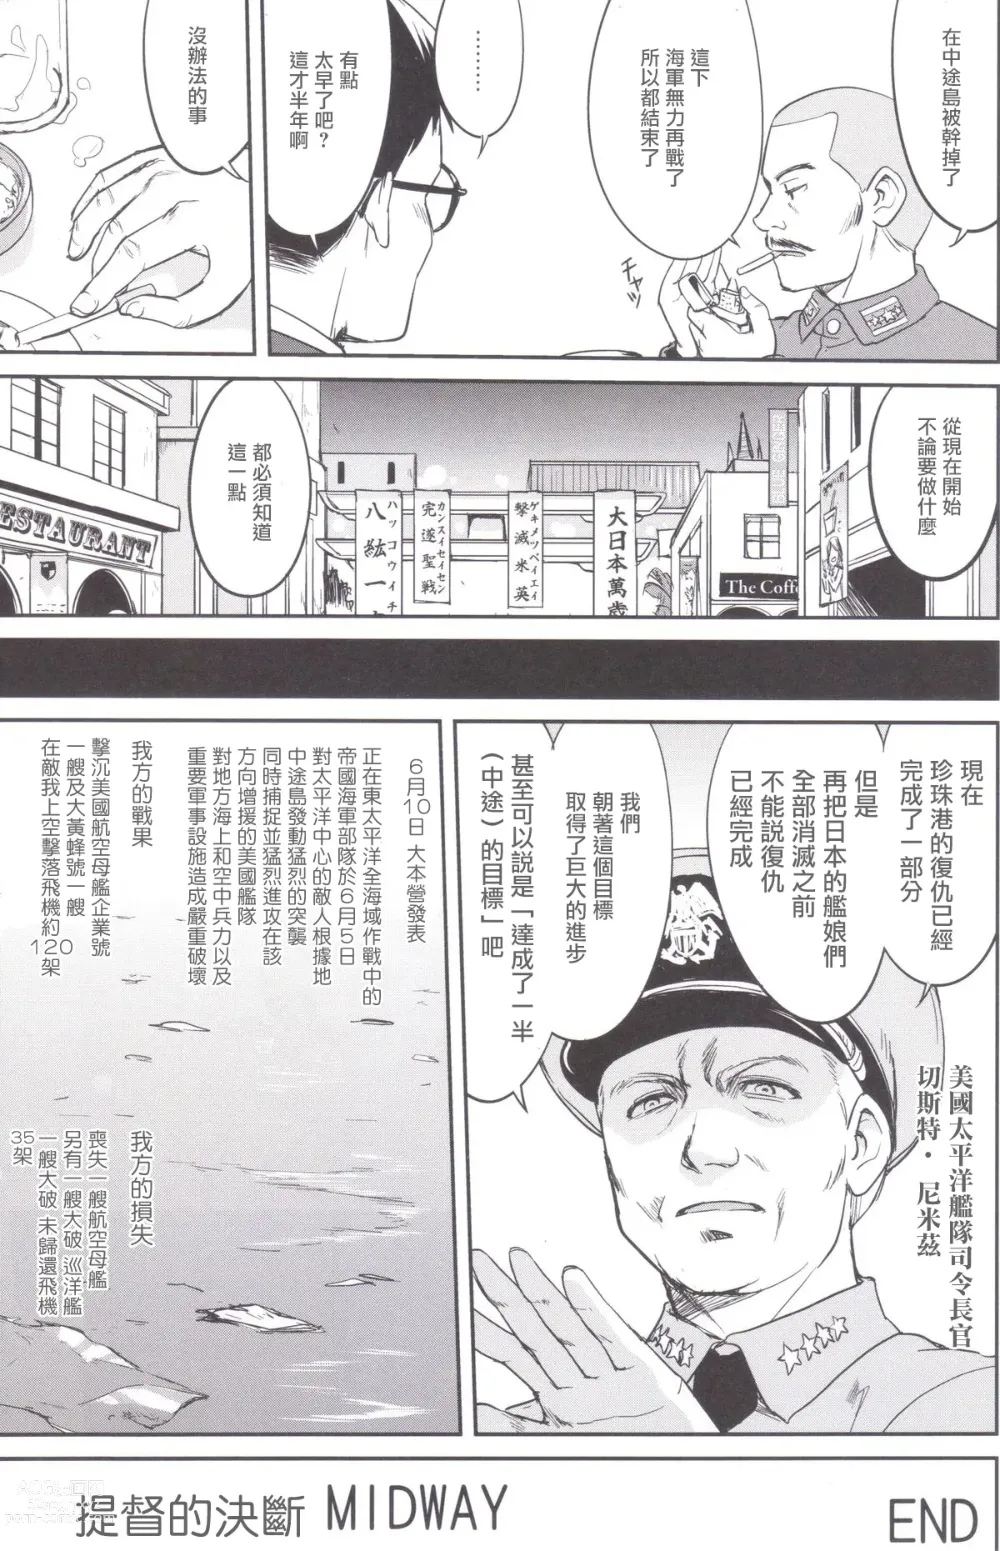 Page 56 of doujinshi Teitoku no Ketsudan MIDWAY